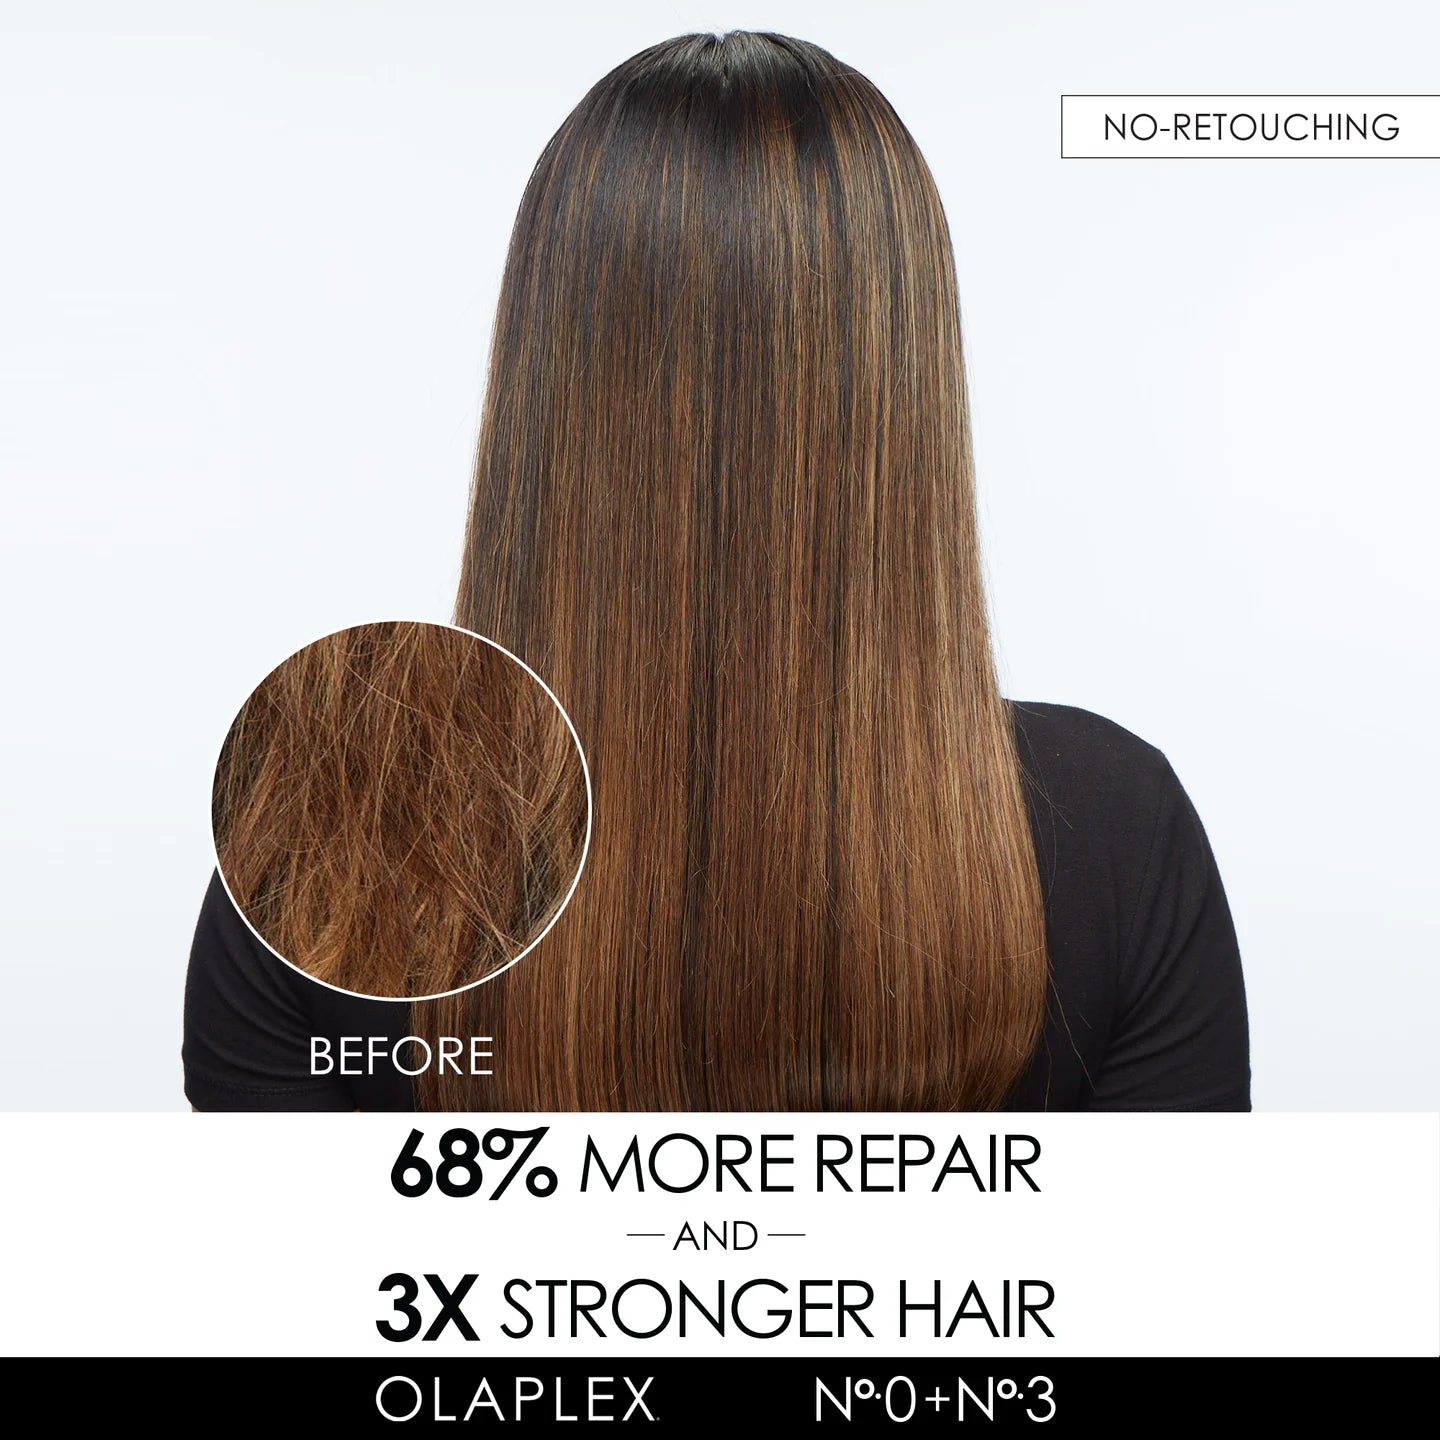 Інтенсивний відновлюючий засіб для волосся №.0 від Olaplex (Olaplex The Intensive Bond Building Hair Treatment №.0)